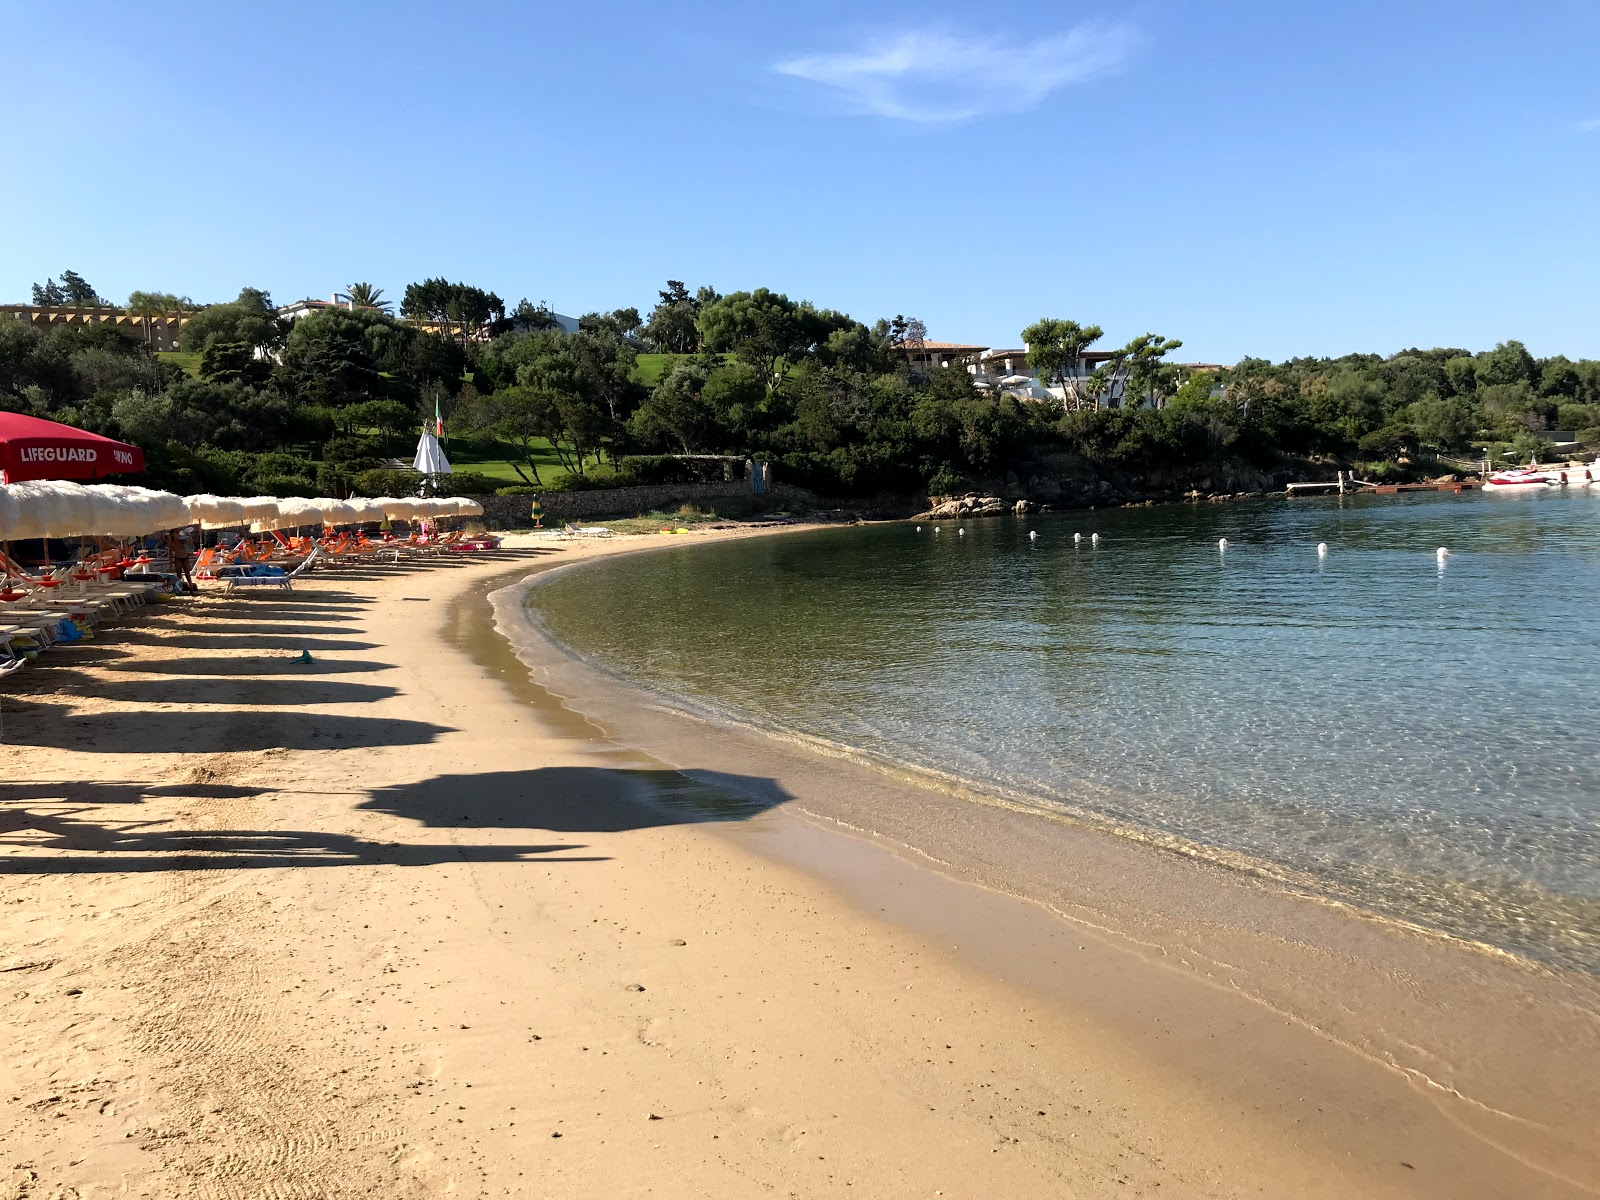 Spiaggia Rudargia'in fotoğrafı plaj tatil beldesi alanı